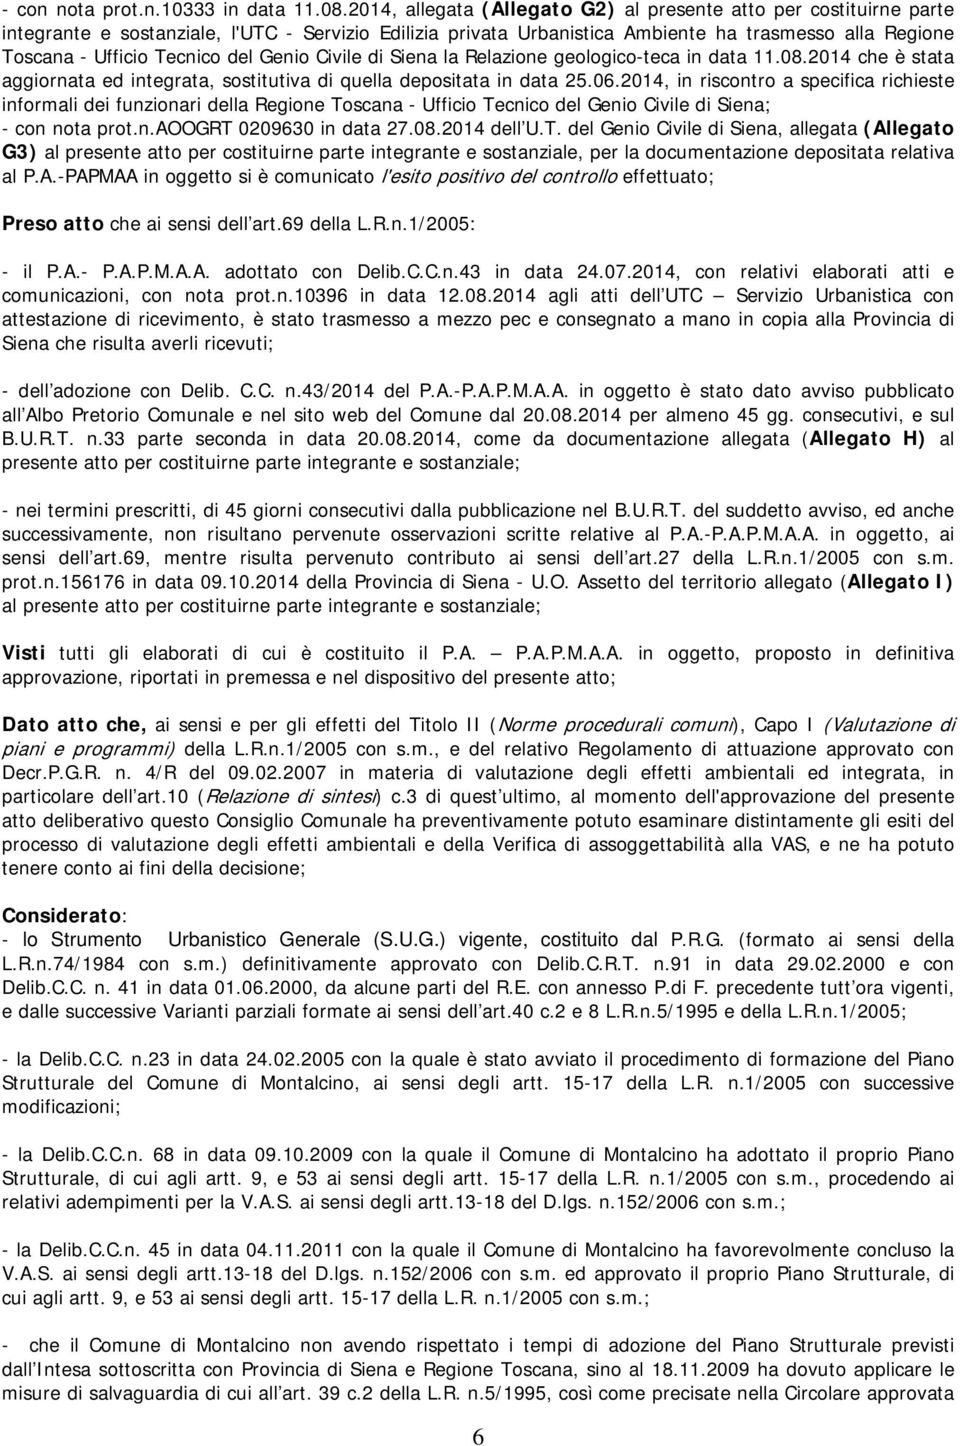 Tecnico del Genio Civile di Siena la Relazione geologico-teca in data 11.08.2014 che è stata aggiornata ed integrata, sostitutiva di quella depositata in data 25.06.